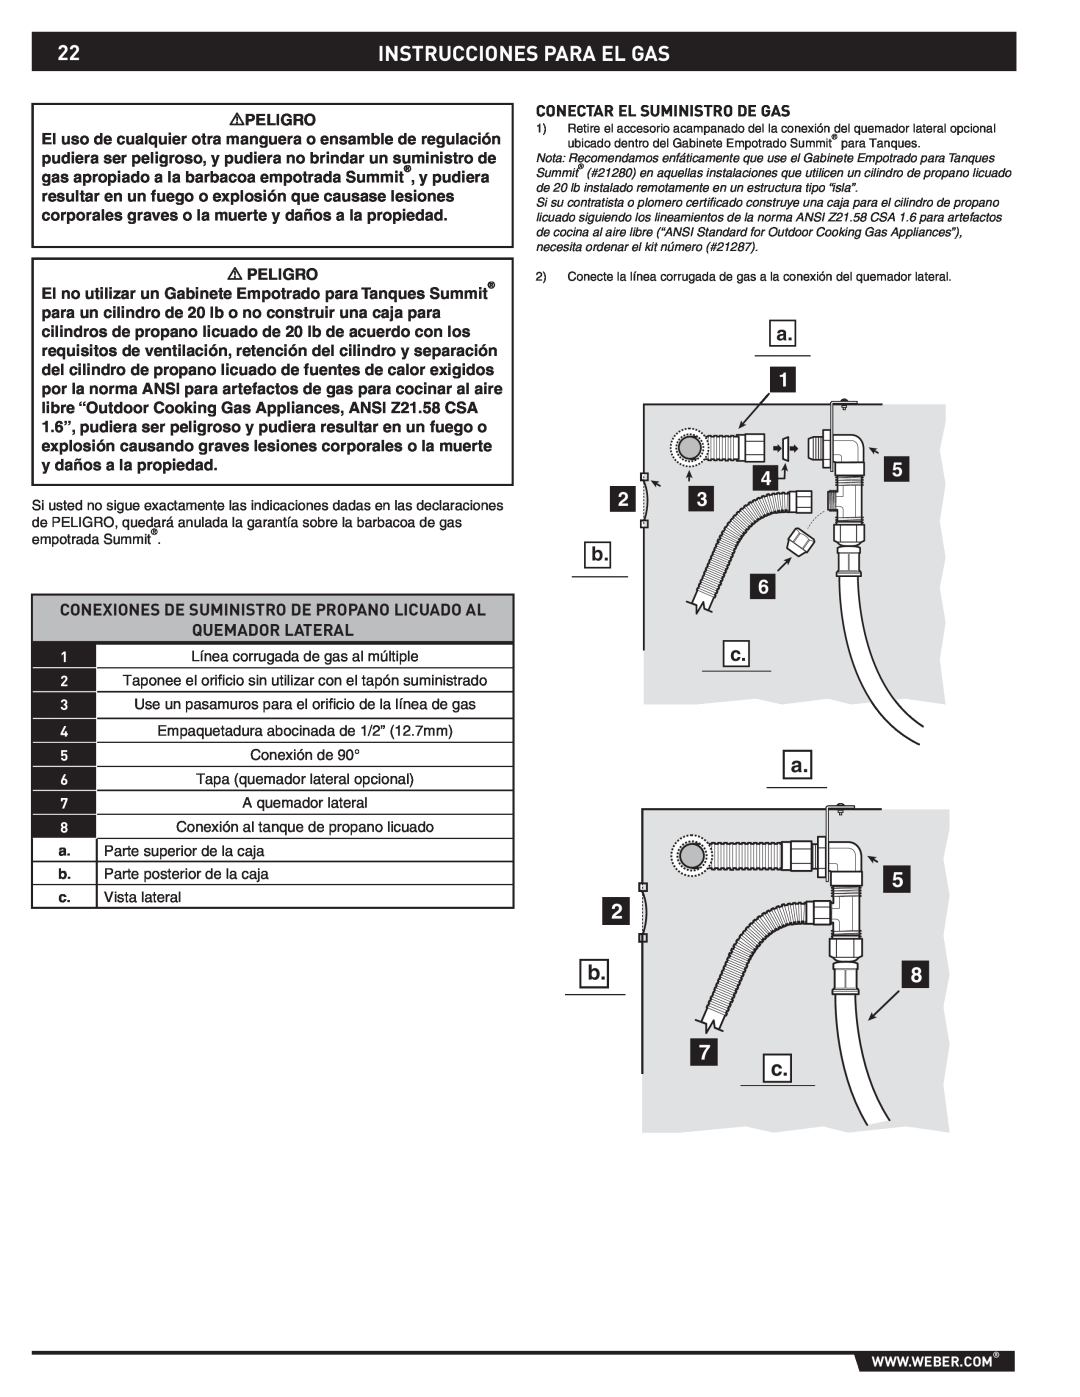 Weber 89796 manual Instrucciones Para El Gas, Conexiones De Suministro De Propano Licuado Al, Quemador Lateral 